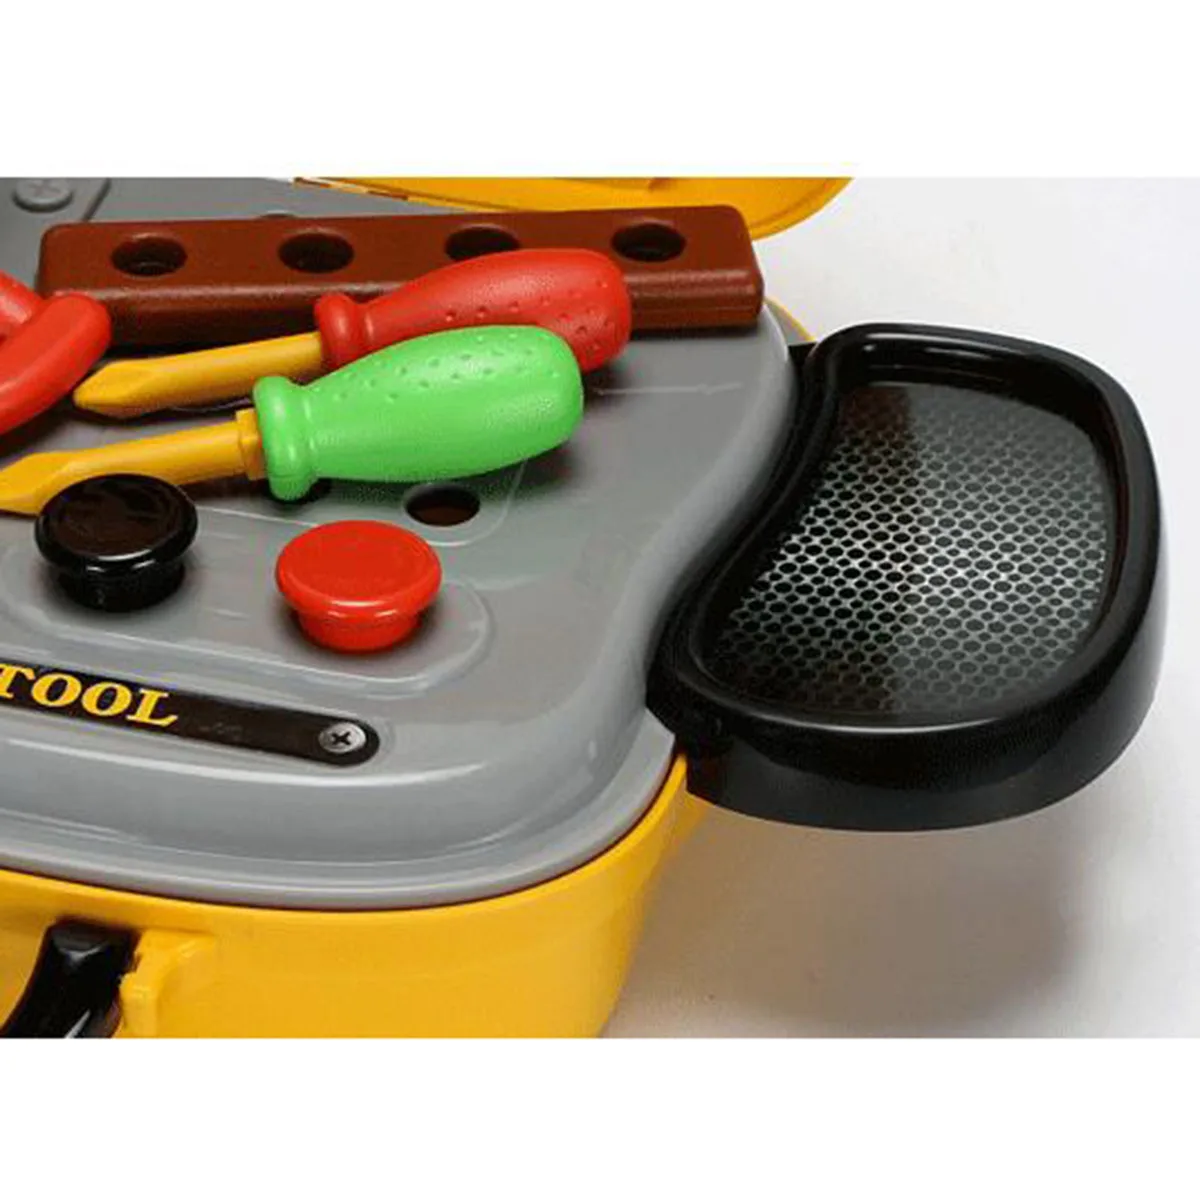 Вид строительный инструмент для ролевой игры Игрушки для маленьких мальчиков Пластик бензопила Hammer Детский чемодан сад Столярный инструмент коробка младенца комплект